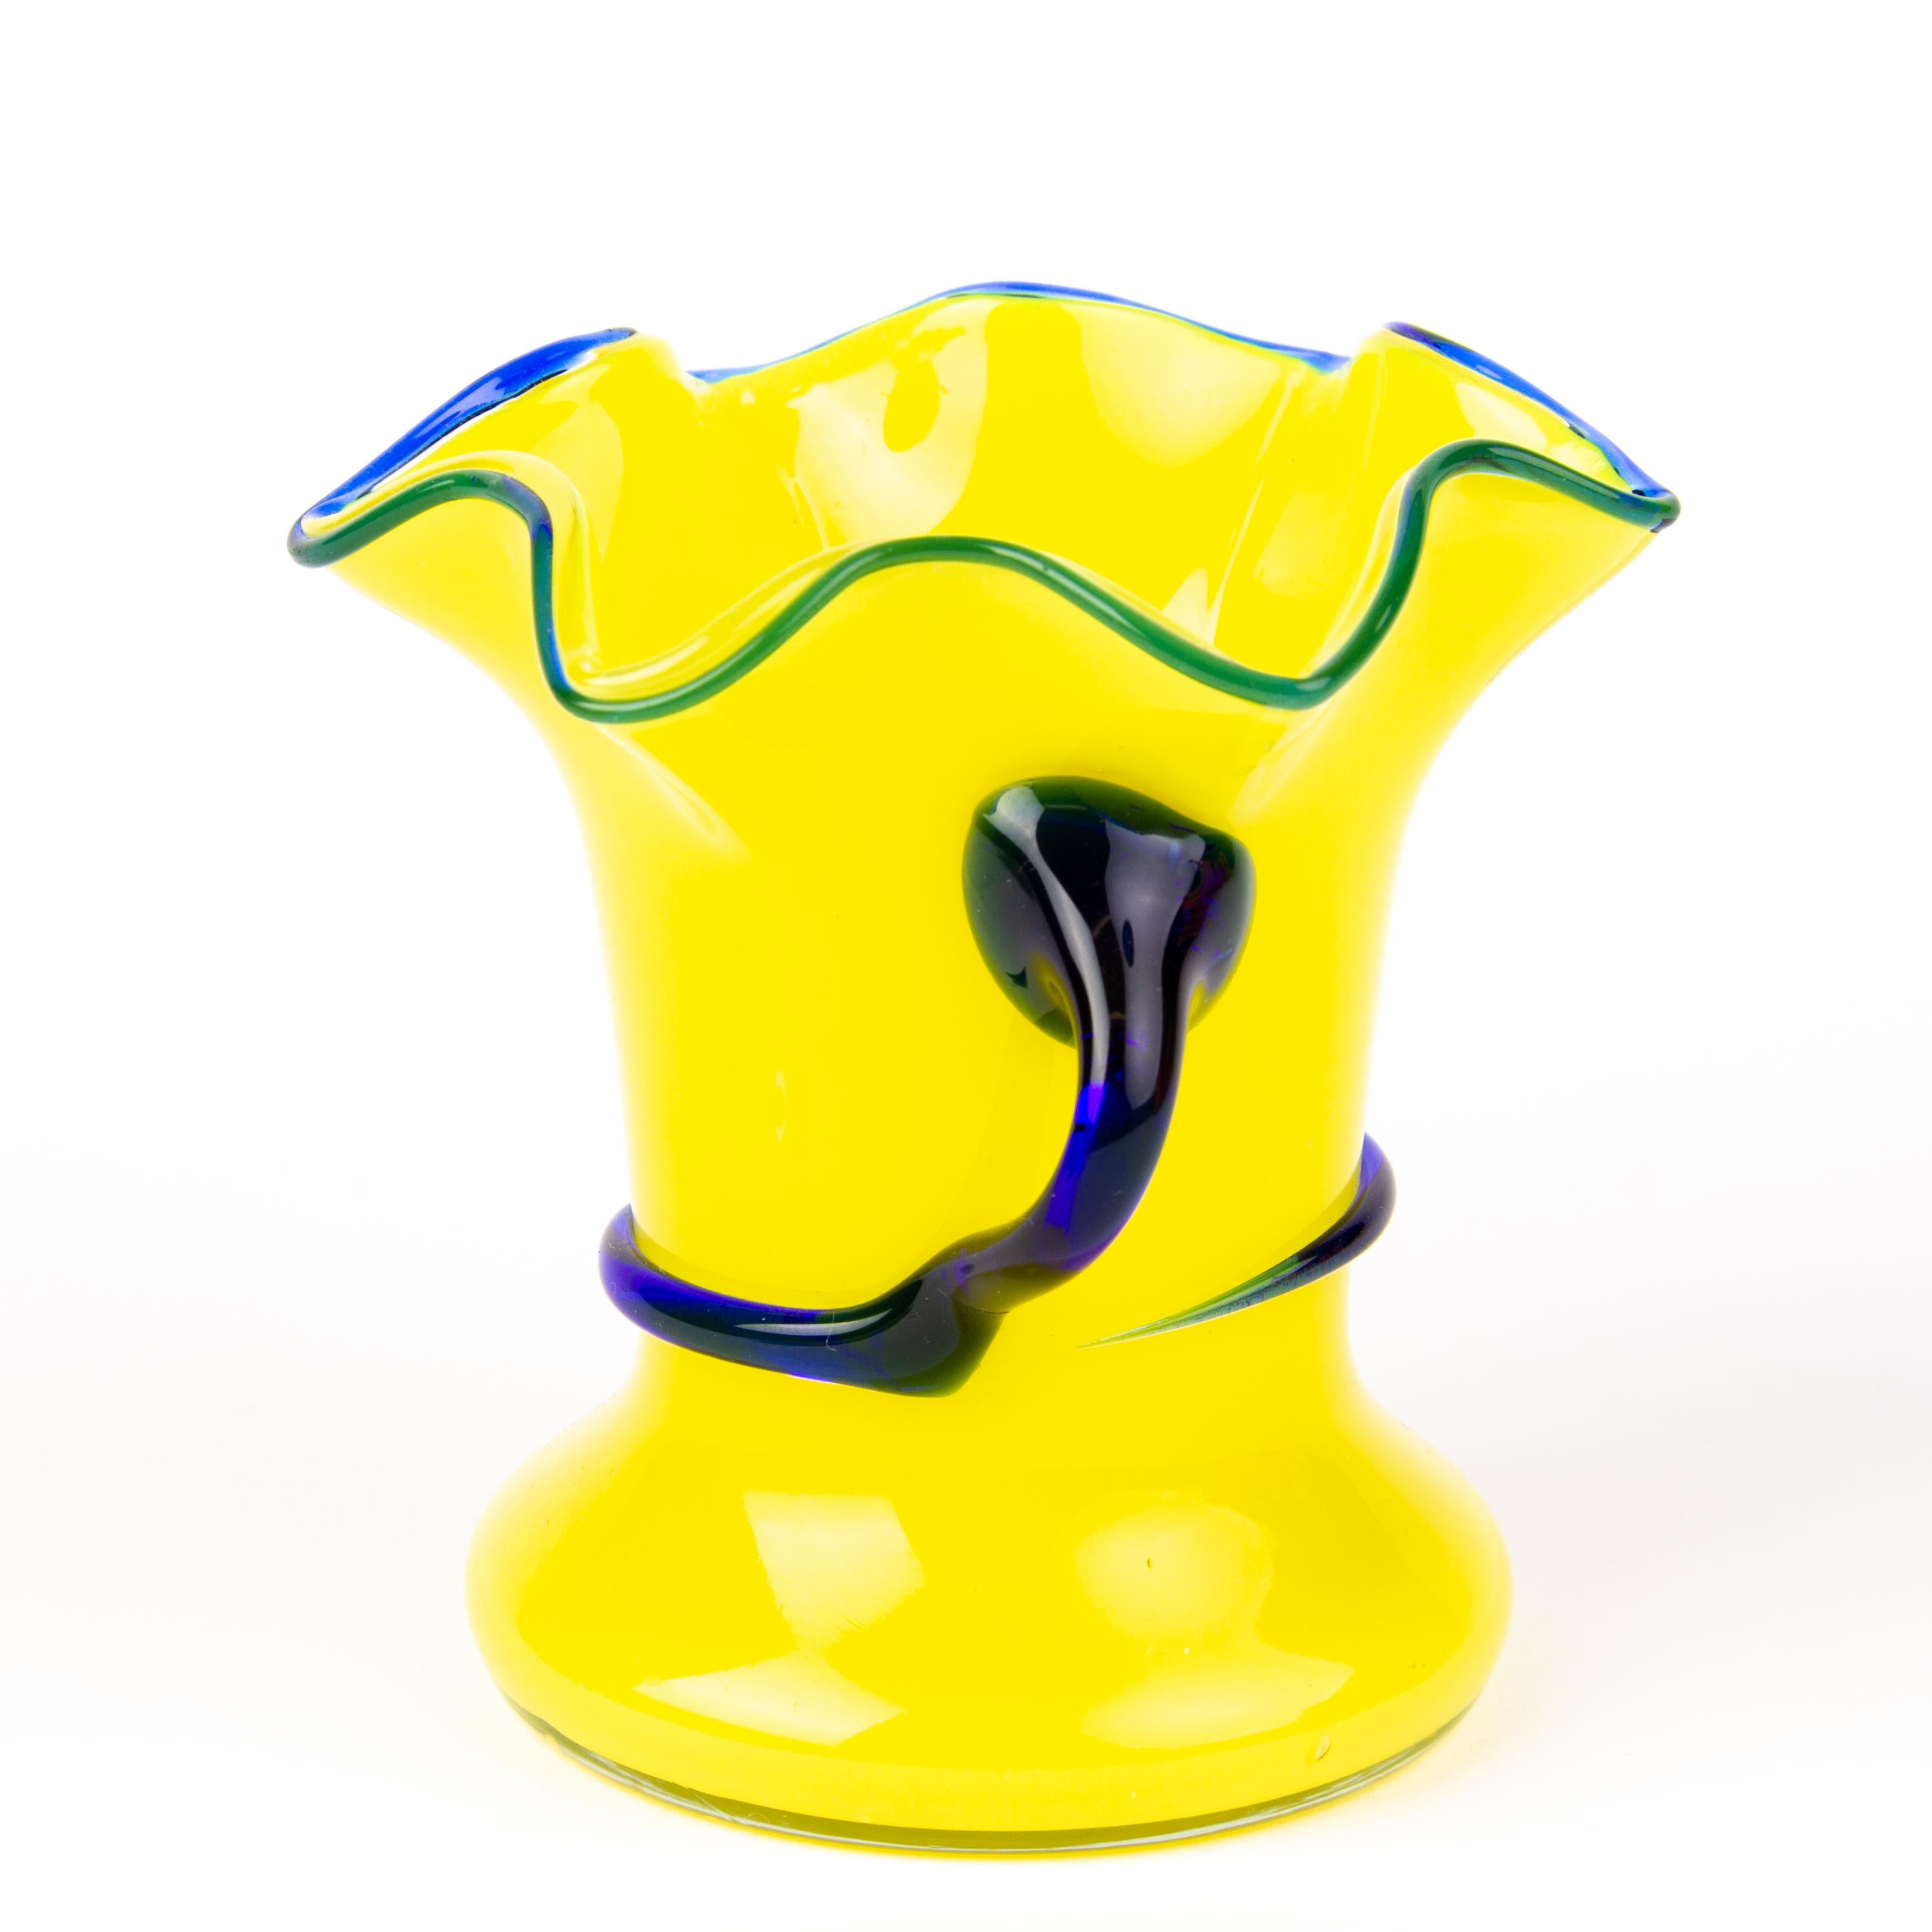 En bon état.
D'une collection privée

Michael Powolny Loetz vase Art déco en verre opalin jaune